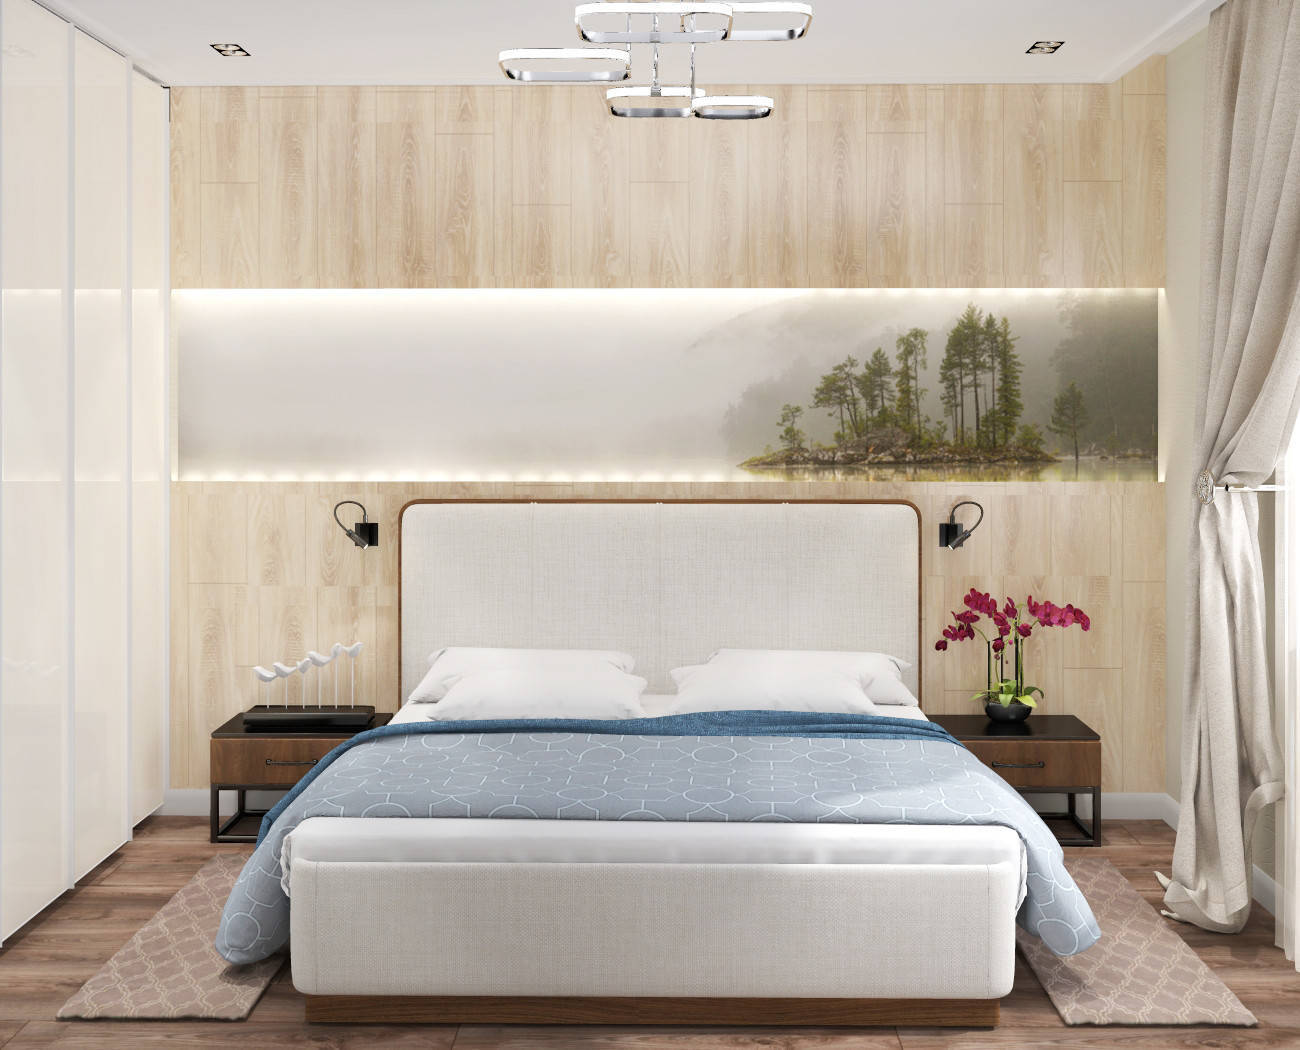 Интерьер спальни с рейками с подсветкой, подсветкой настенной, подсветкой светодиодной и светильниками над кроватью в современном стиле